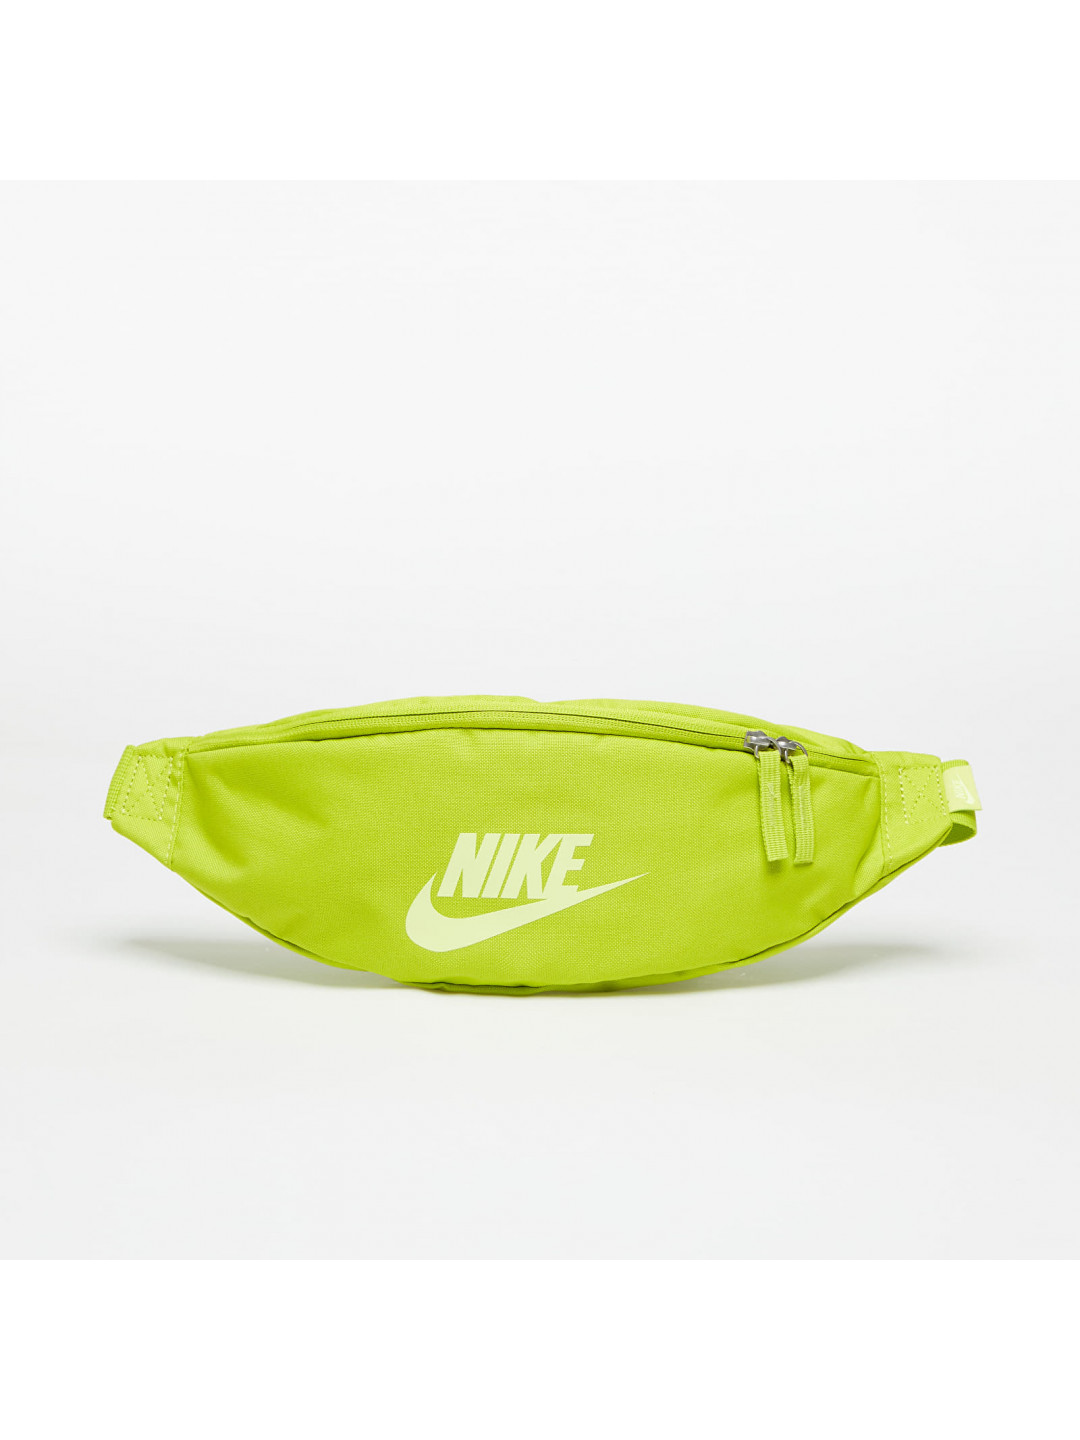 Nike Heritage Waistpack Bright Cactus Lt Lemon Twist